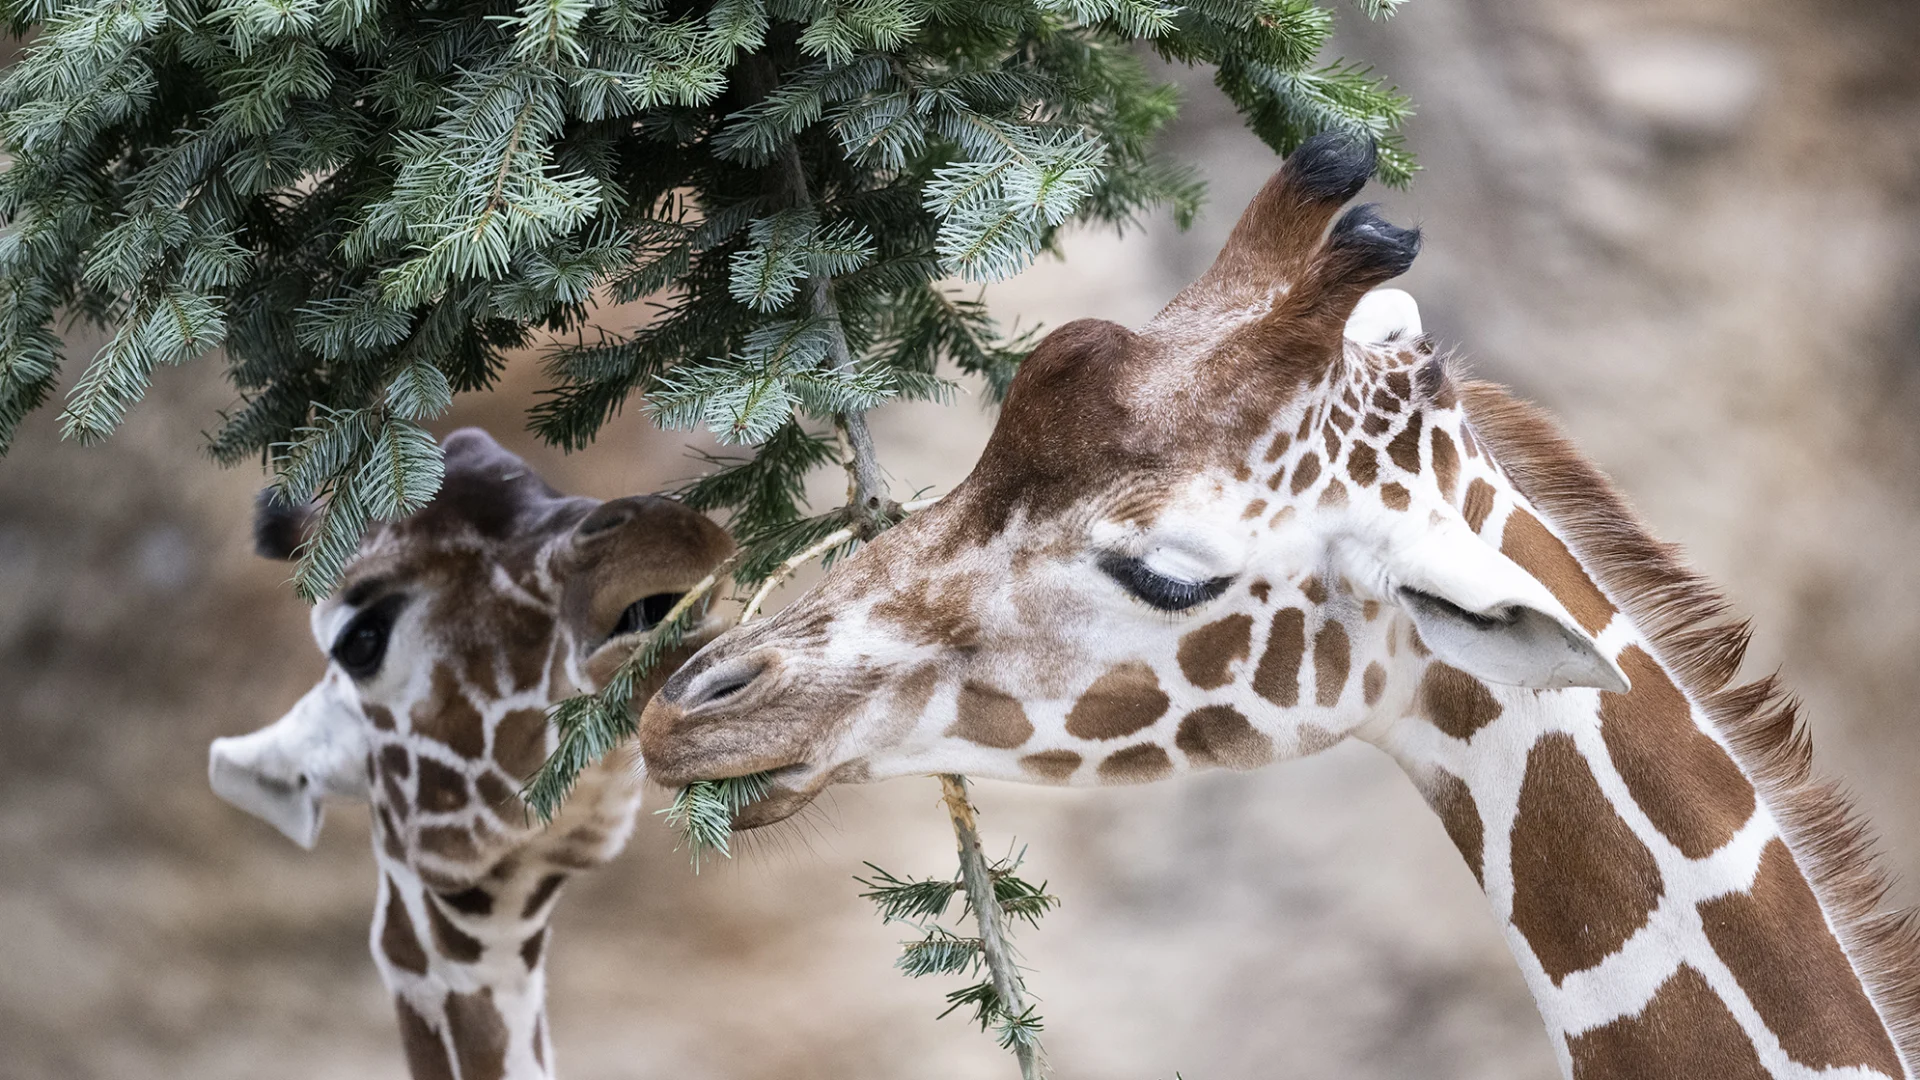 Giraffen im Zoo Zürich knabbern die Nadeln von einem Christbaum.